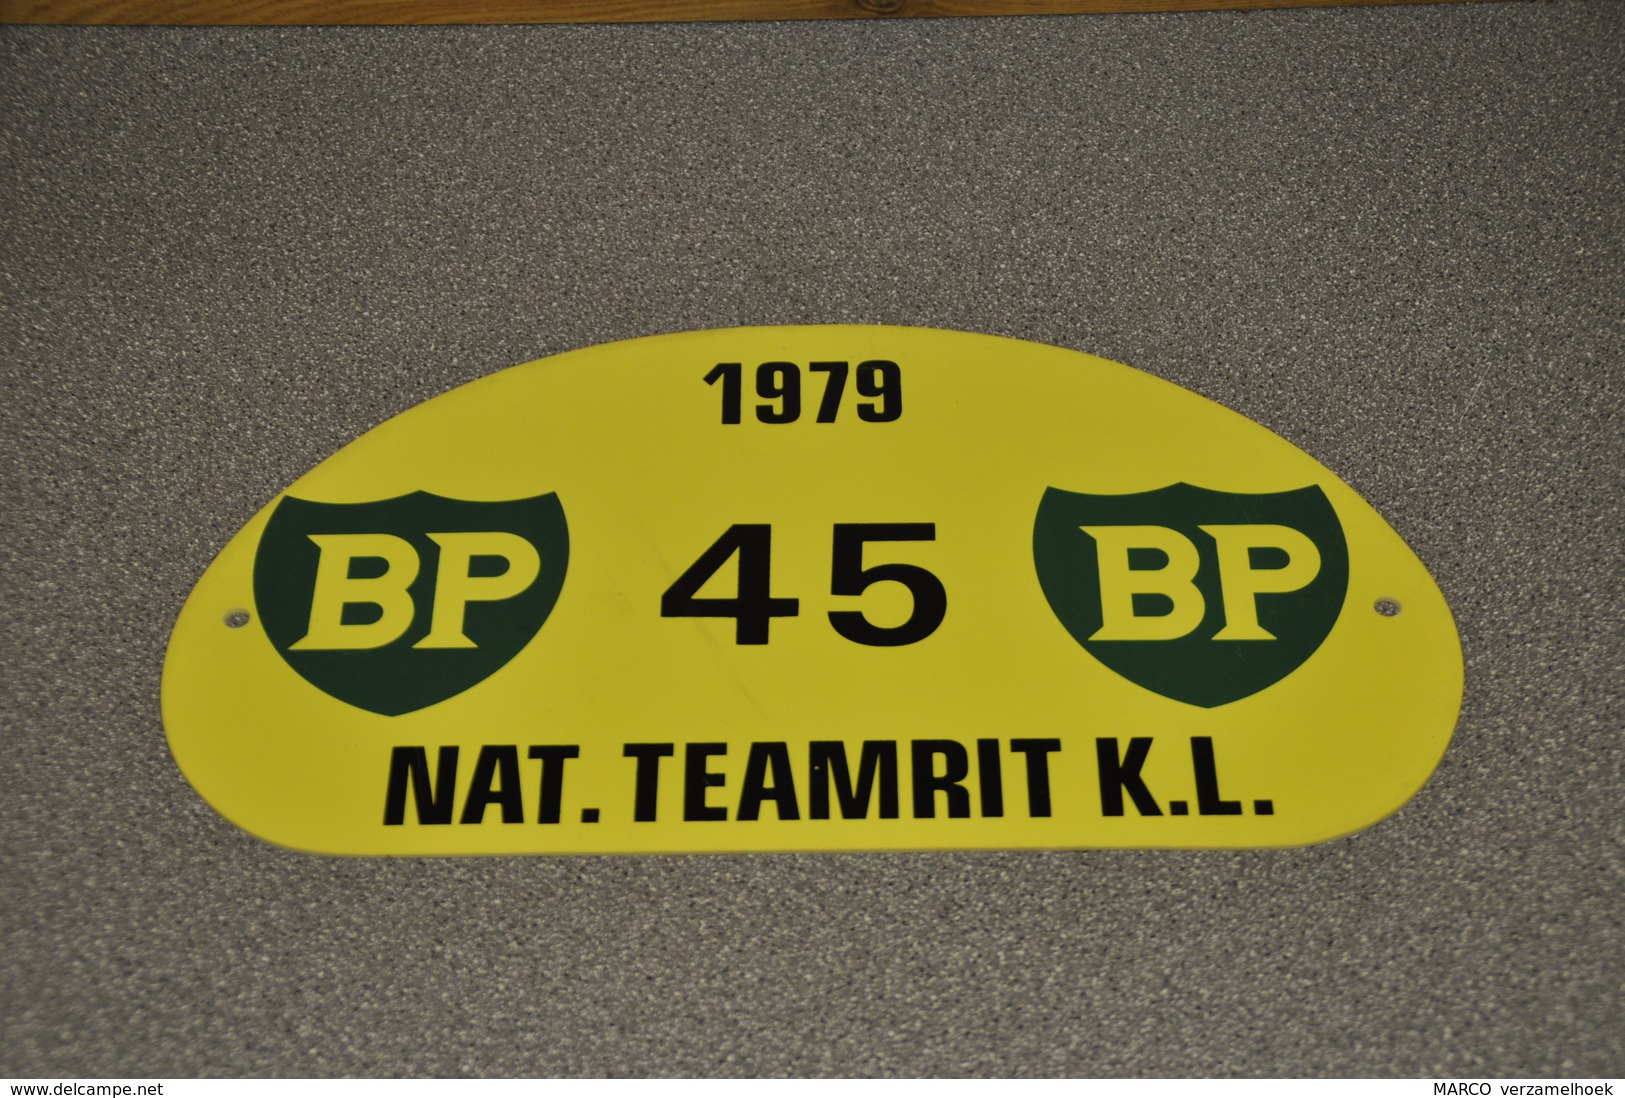 Rally Plaat-rallye Plaque Plastic: Nat. Teamrit K.L. 1979 BP - Rallyeschilder